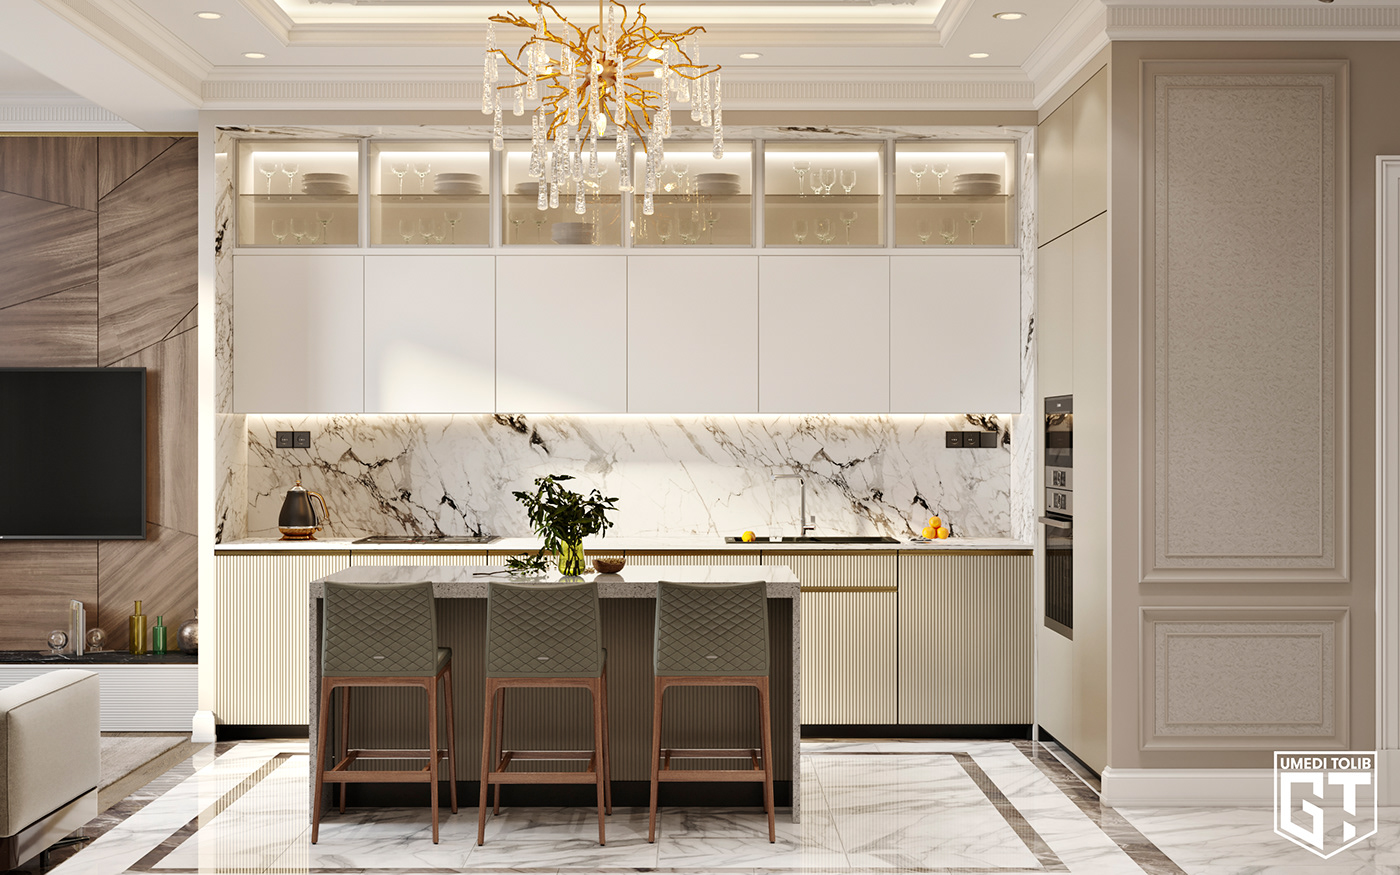 3dmax corona render  Design interiors kitchen design Kitchenroom rendering visualization white kitchen